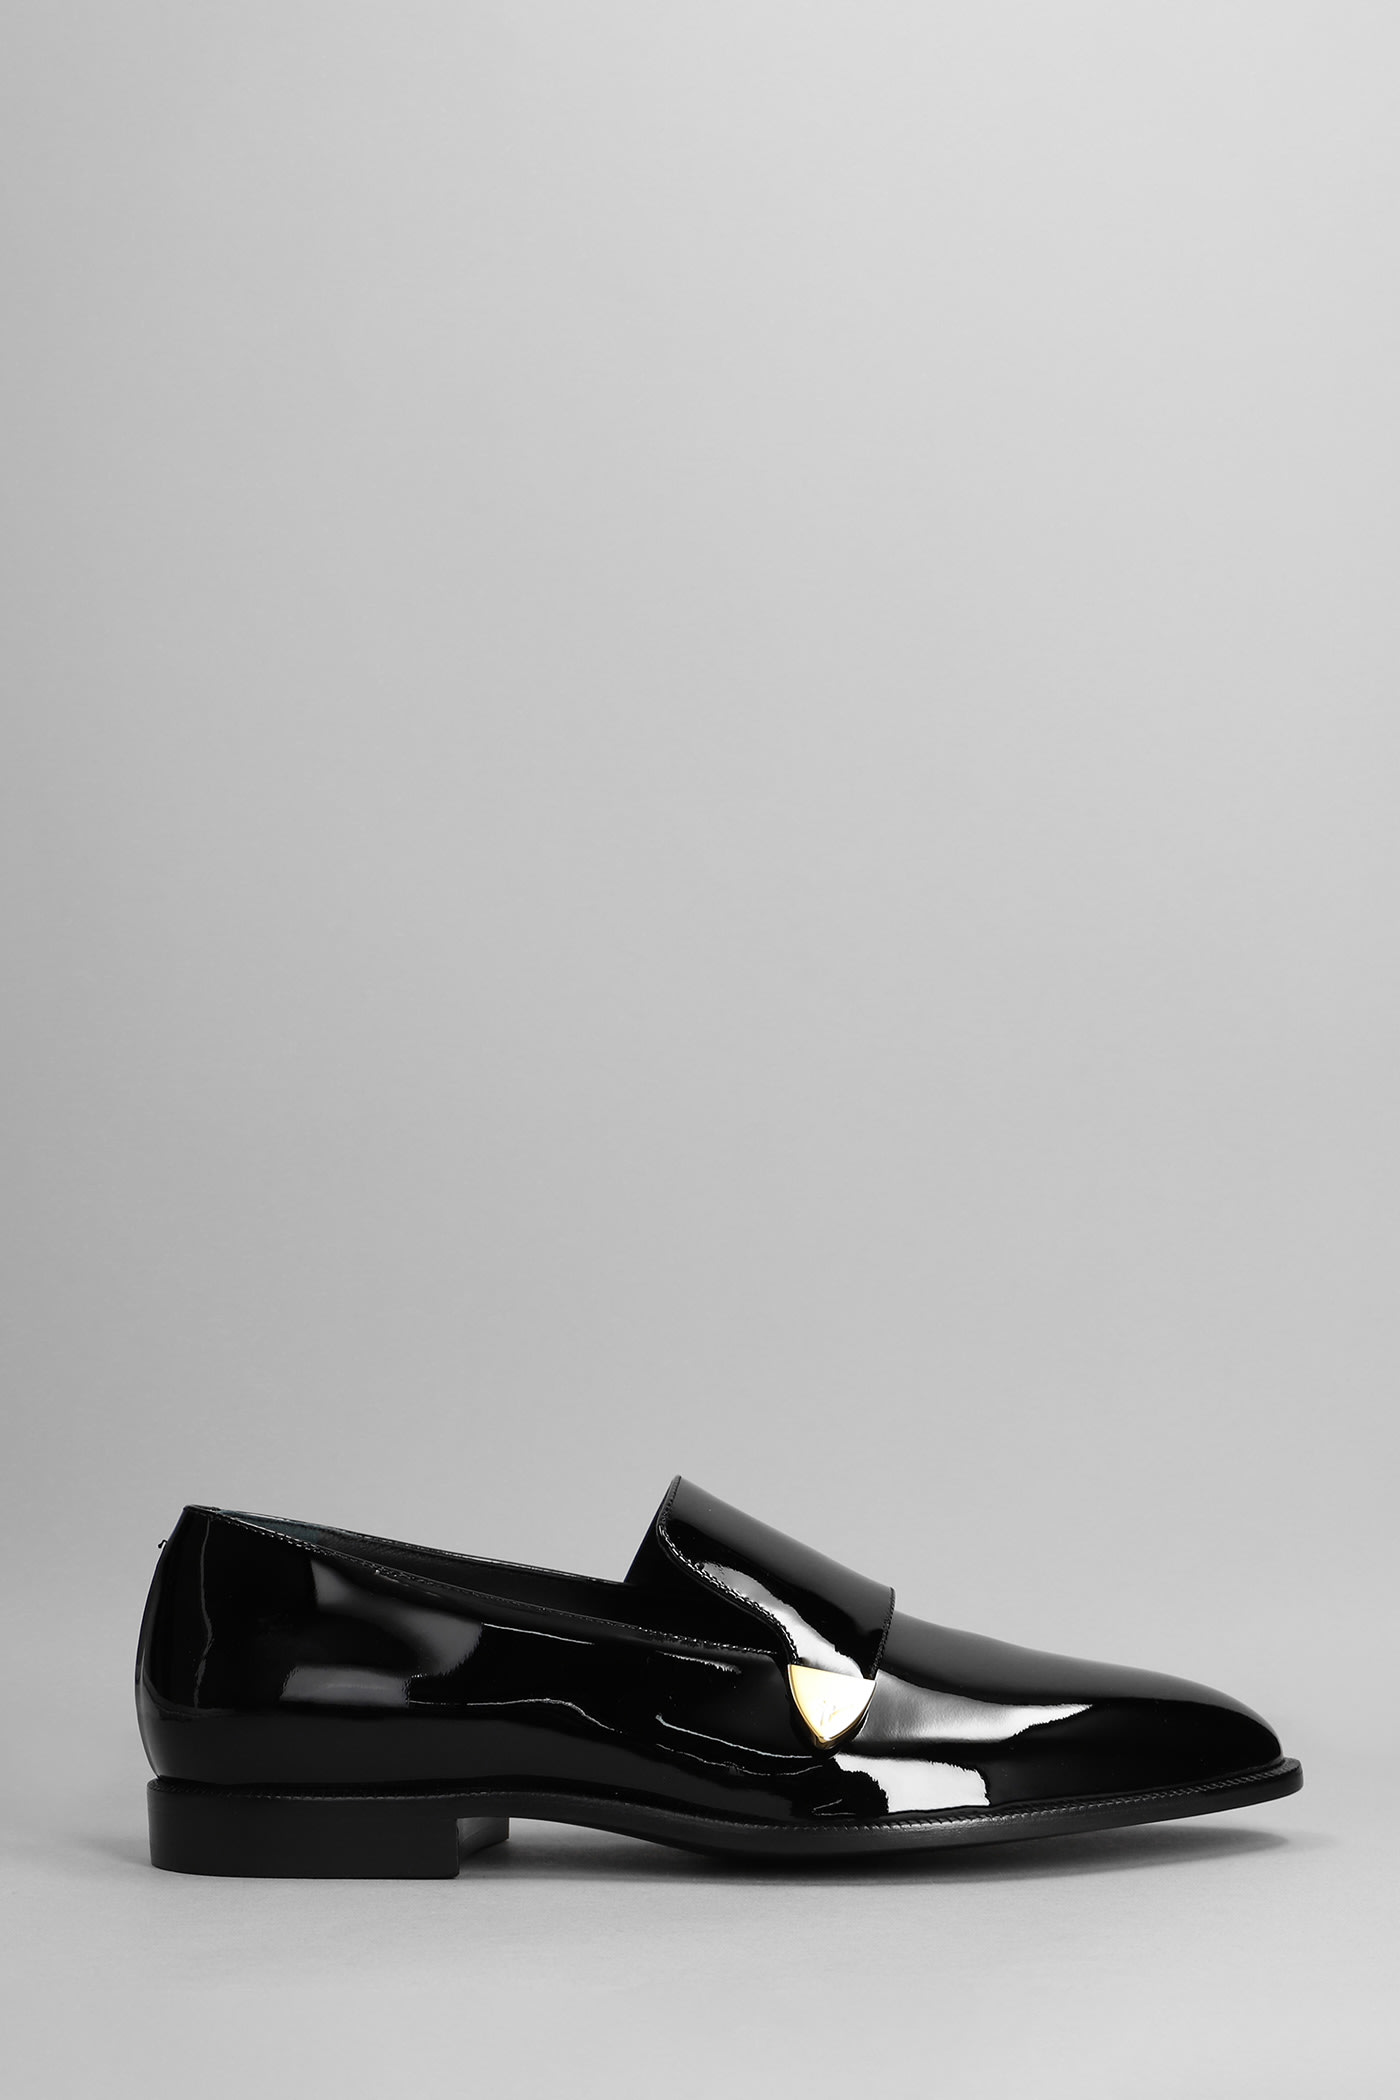 Giuseppe Zanotti Eflamm Velvet Loafers In Black Patent Leather